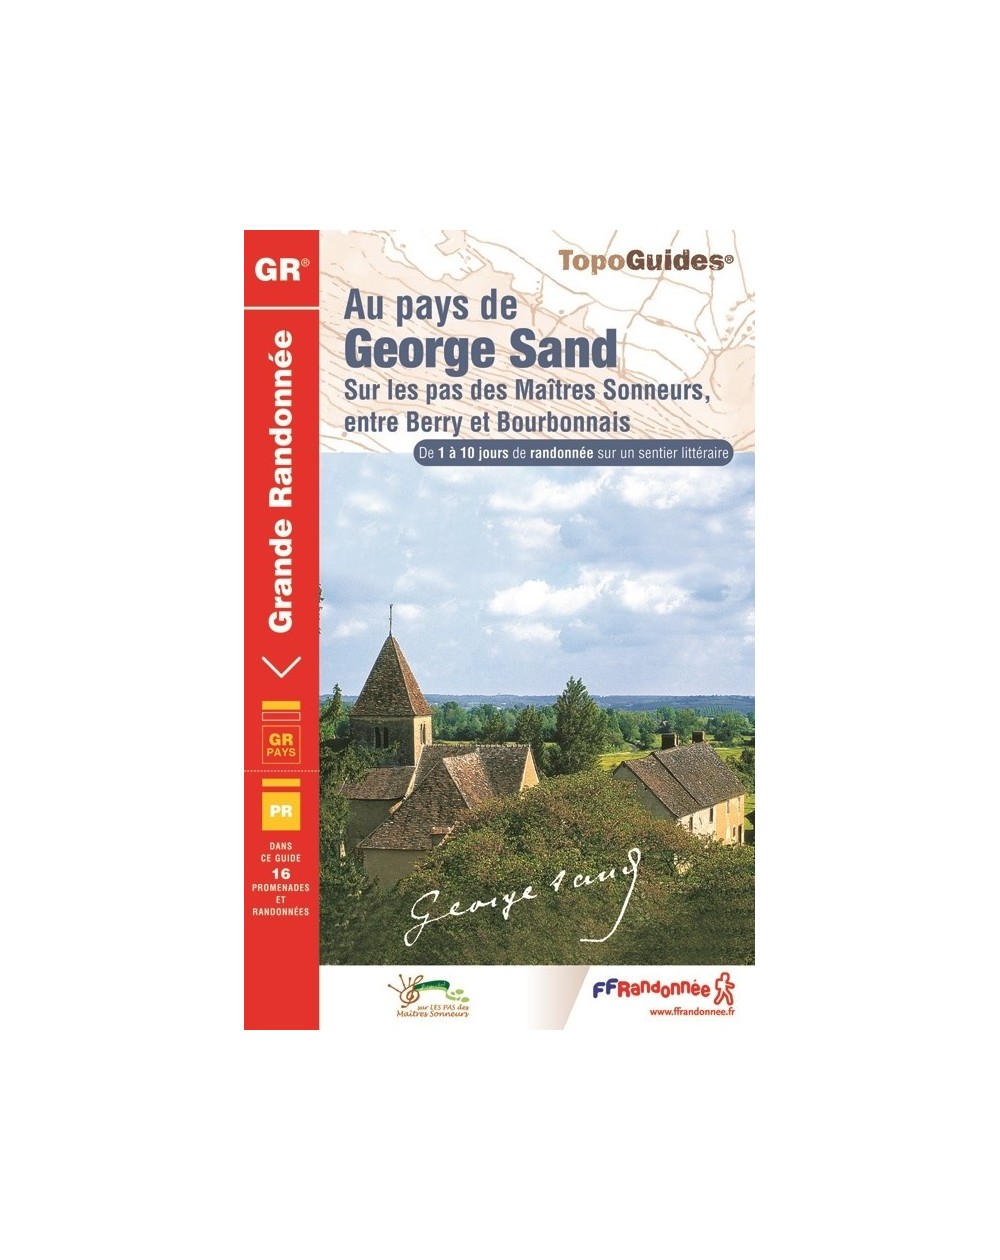 Au pays de George Sand | Topoguide FFRP